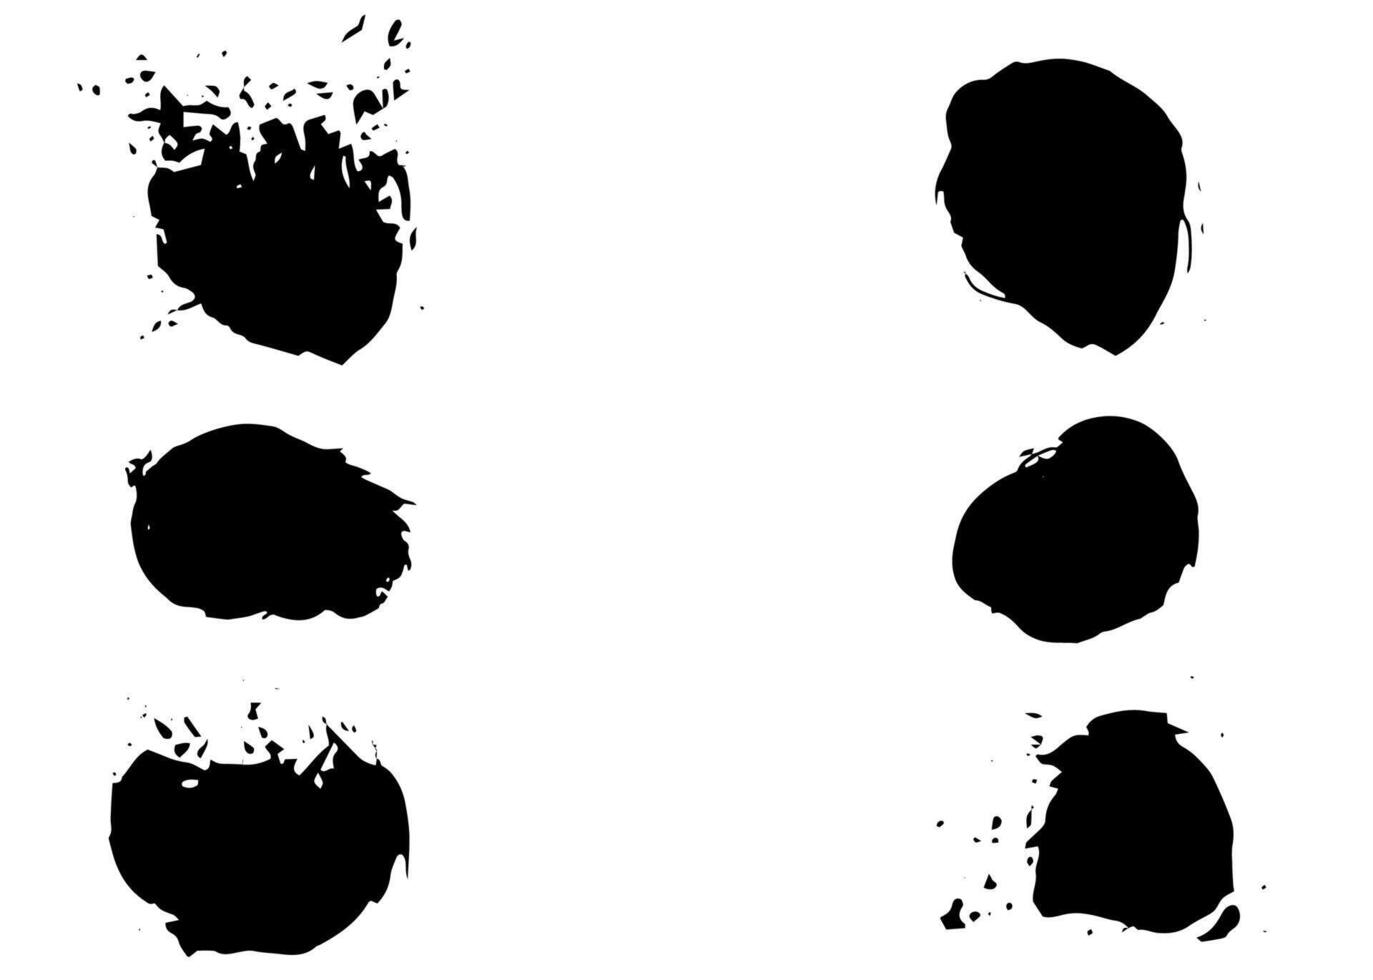 illustration vectorielle de cercle d'éclaboussures de tache noire isolée sur fond blanc vecteur